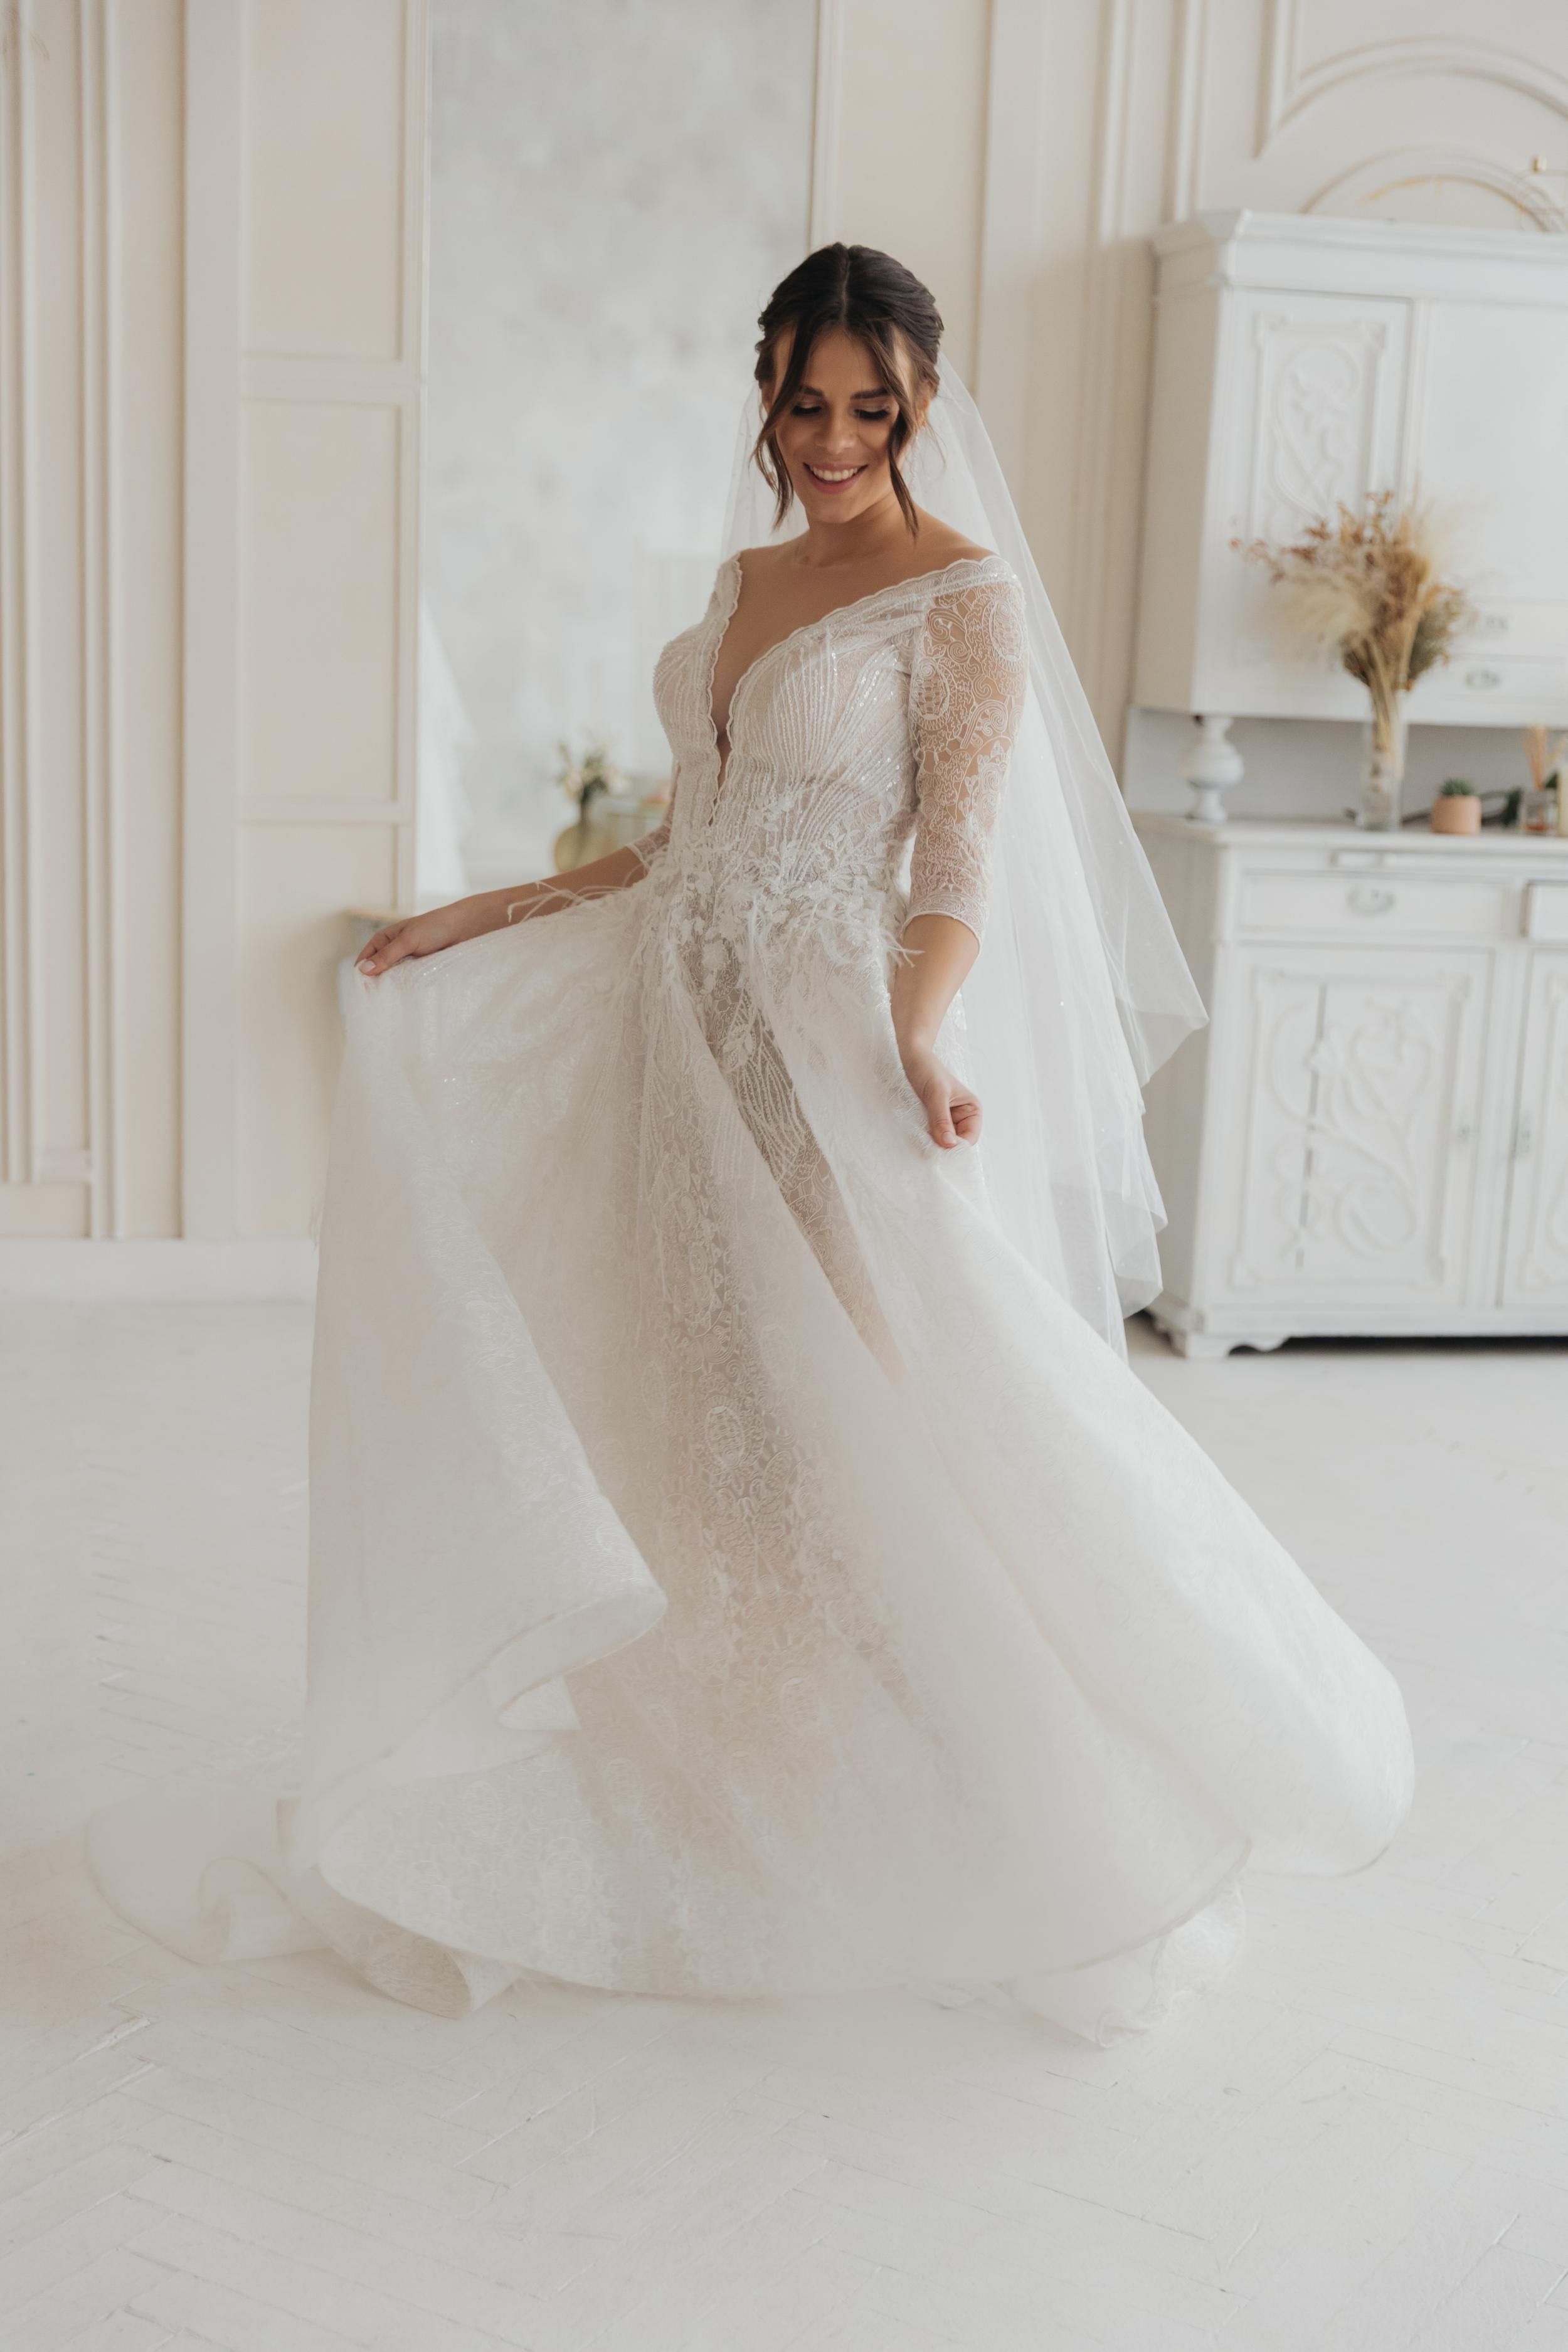 Весільна сукня всесвітньовідомого дизайнера з нової колекції 2022 року